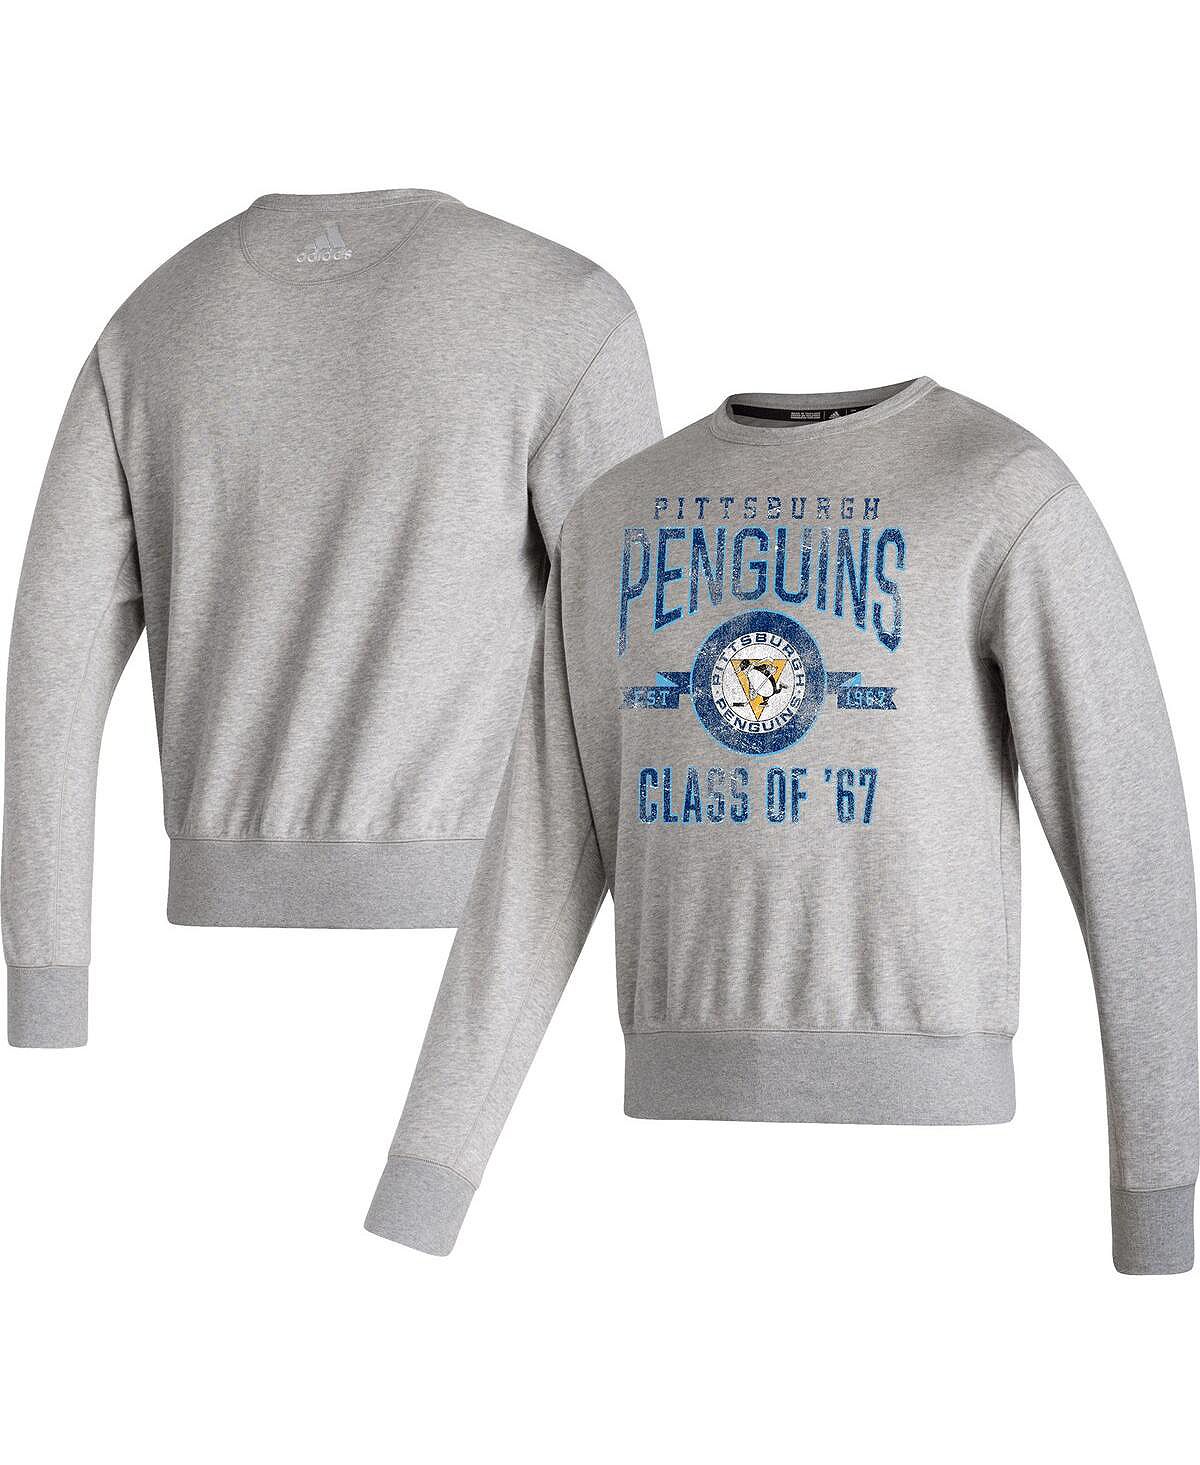 Мужская меланжевая серая футболка pittsburgh penguins в винтажном стиле, пуловер, толстовка adidas, мульти